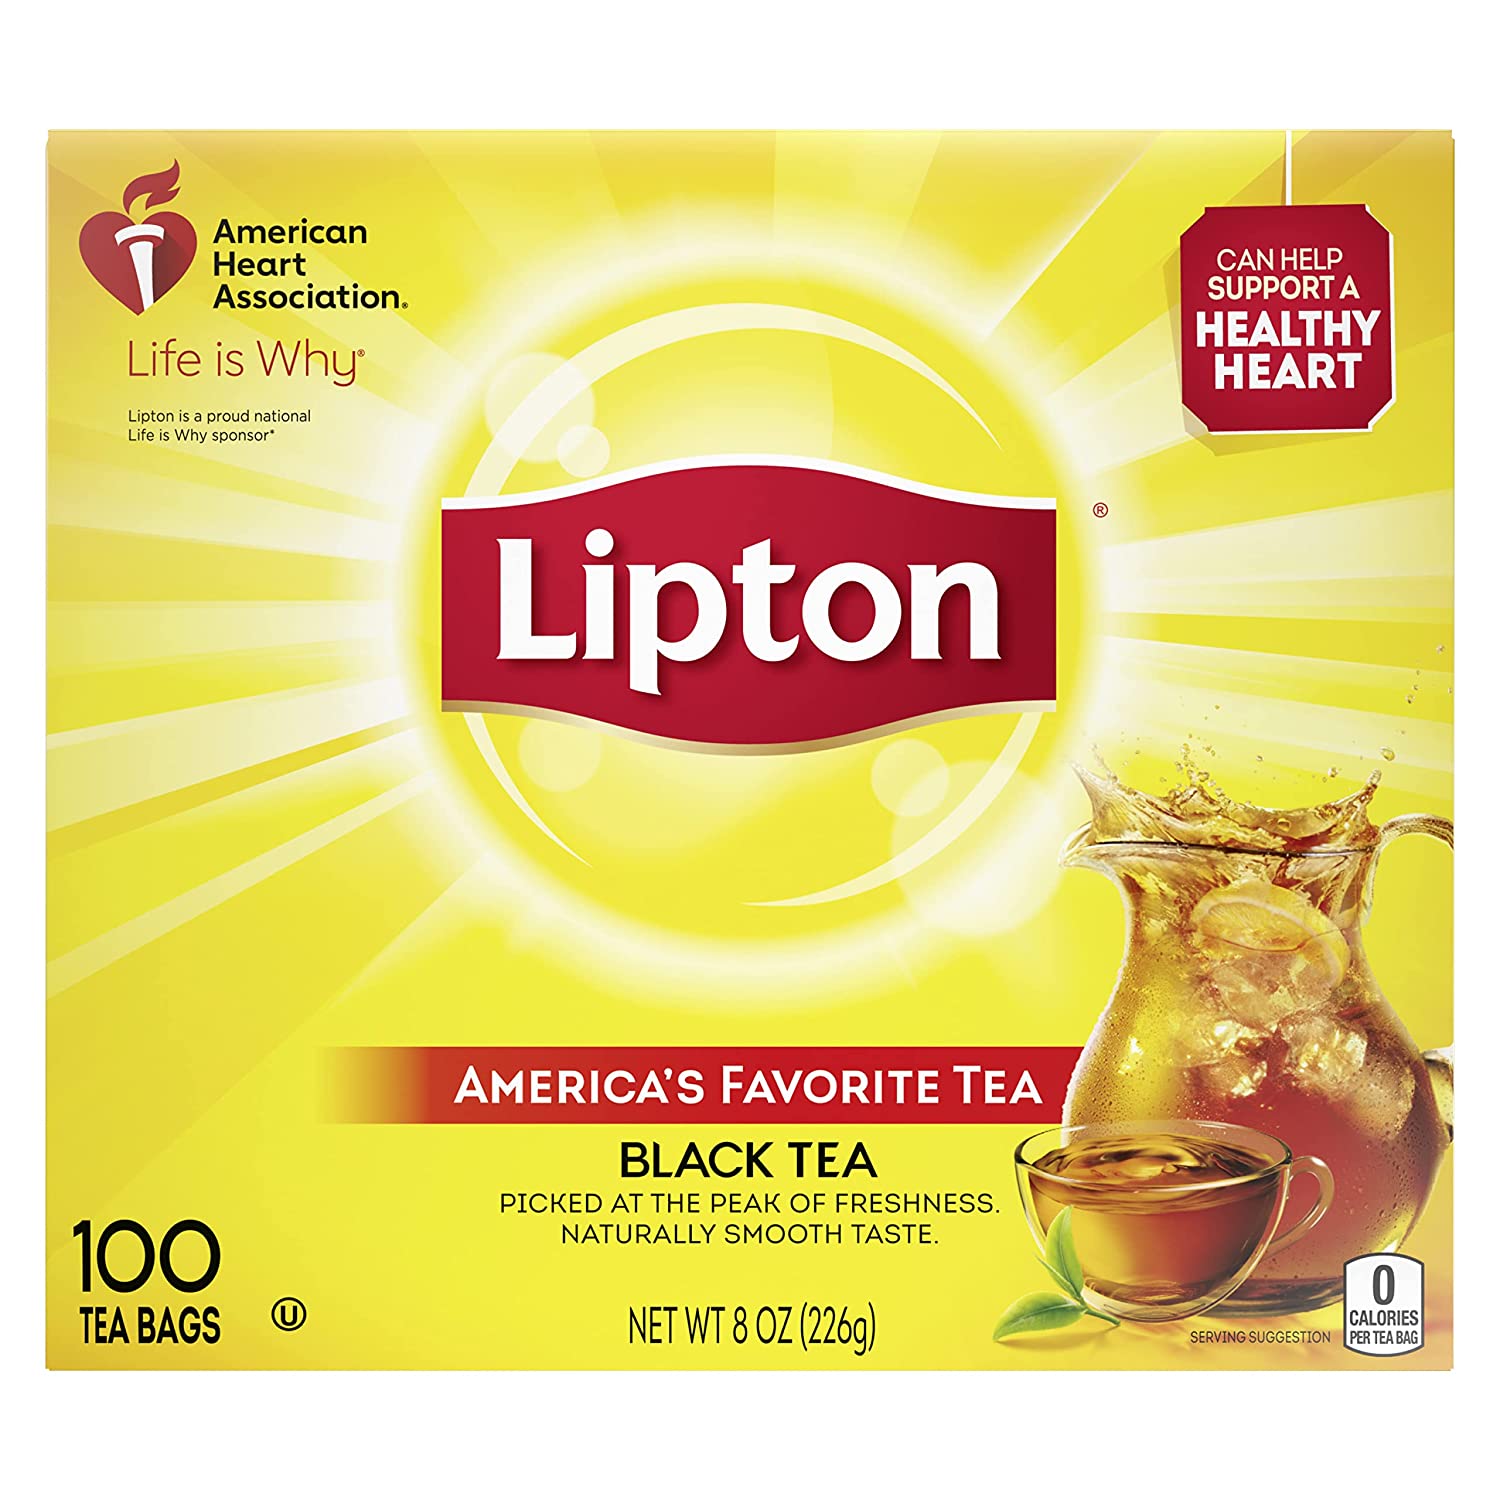 Lipton Green Iced Tea Bags Unsweetened, 1 gallon -- 48 per case